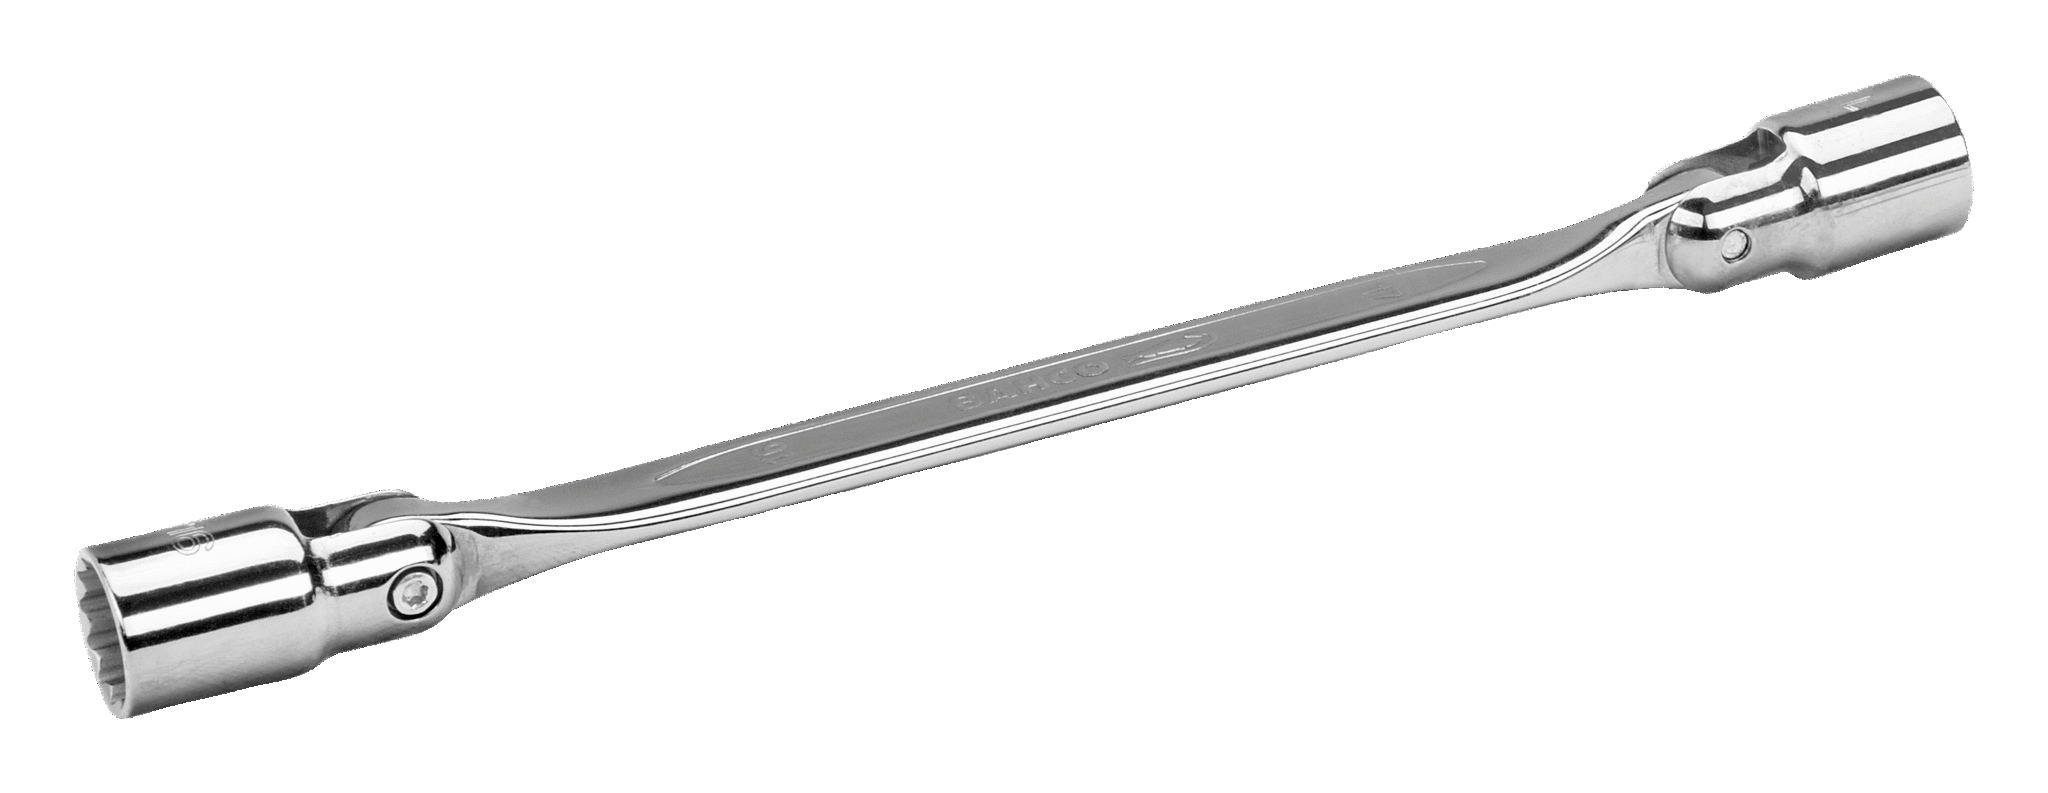 UNITEC 13MM Wrench Aluminum HEX Key C.S EX209-13A